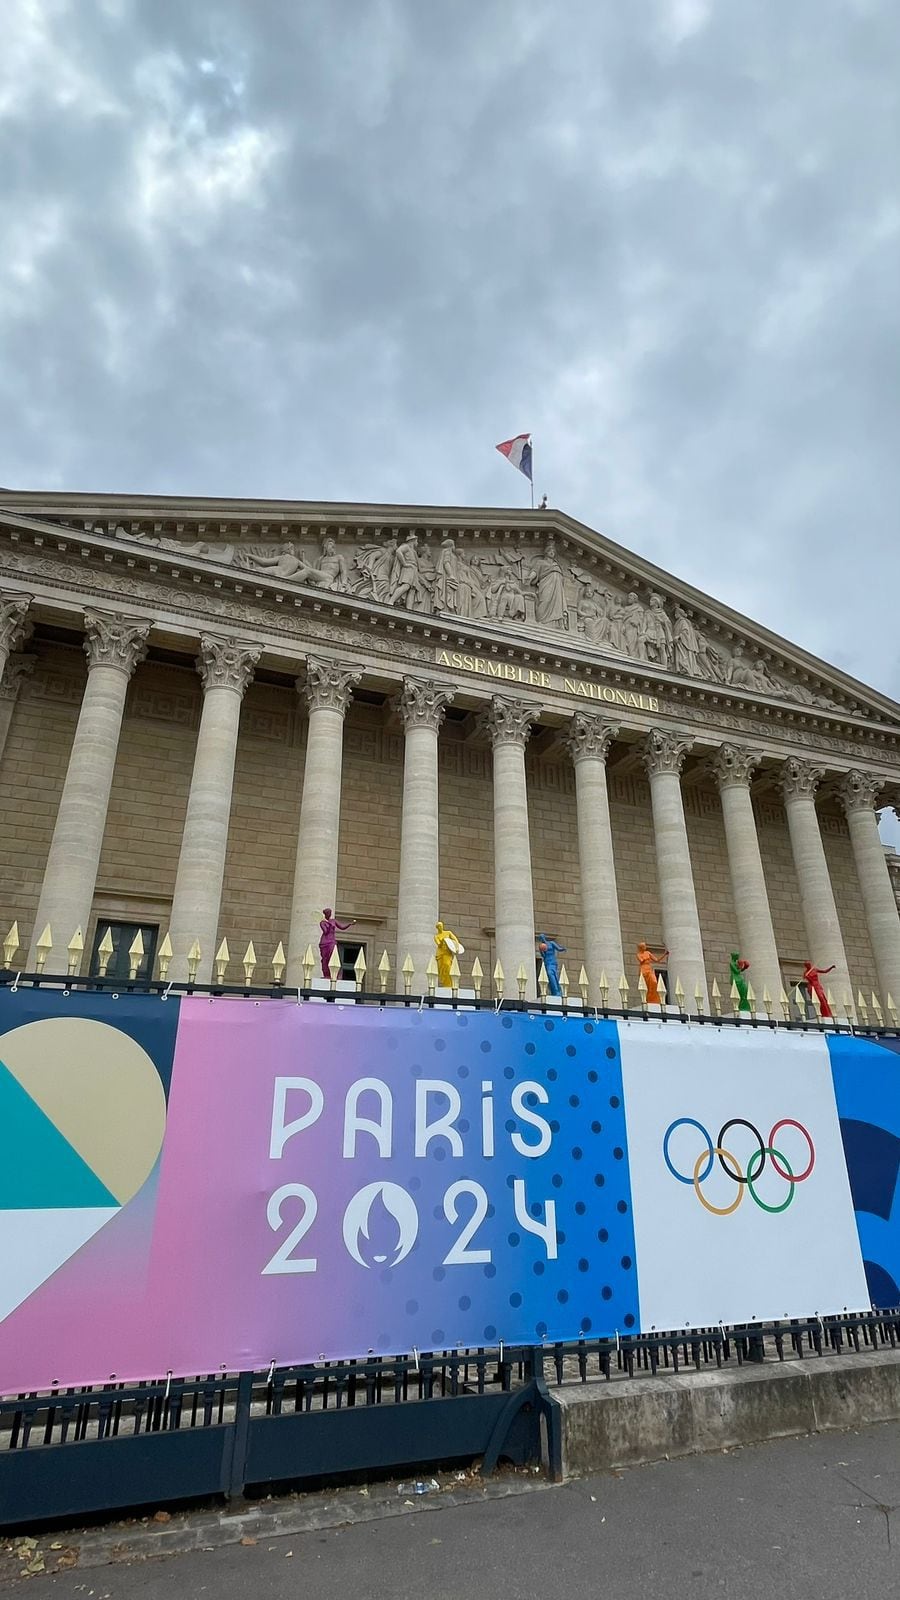 La Asamblea Nacional de París ya está vestida con diversos motivos alusivos a los Juegos Olímpicos París 2024.

Fotografía: Santiago Giraldo